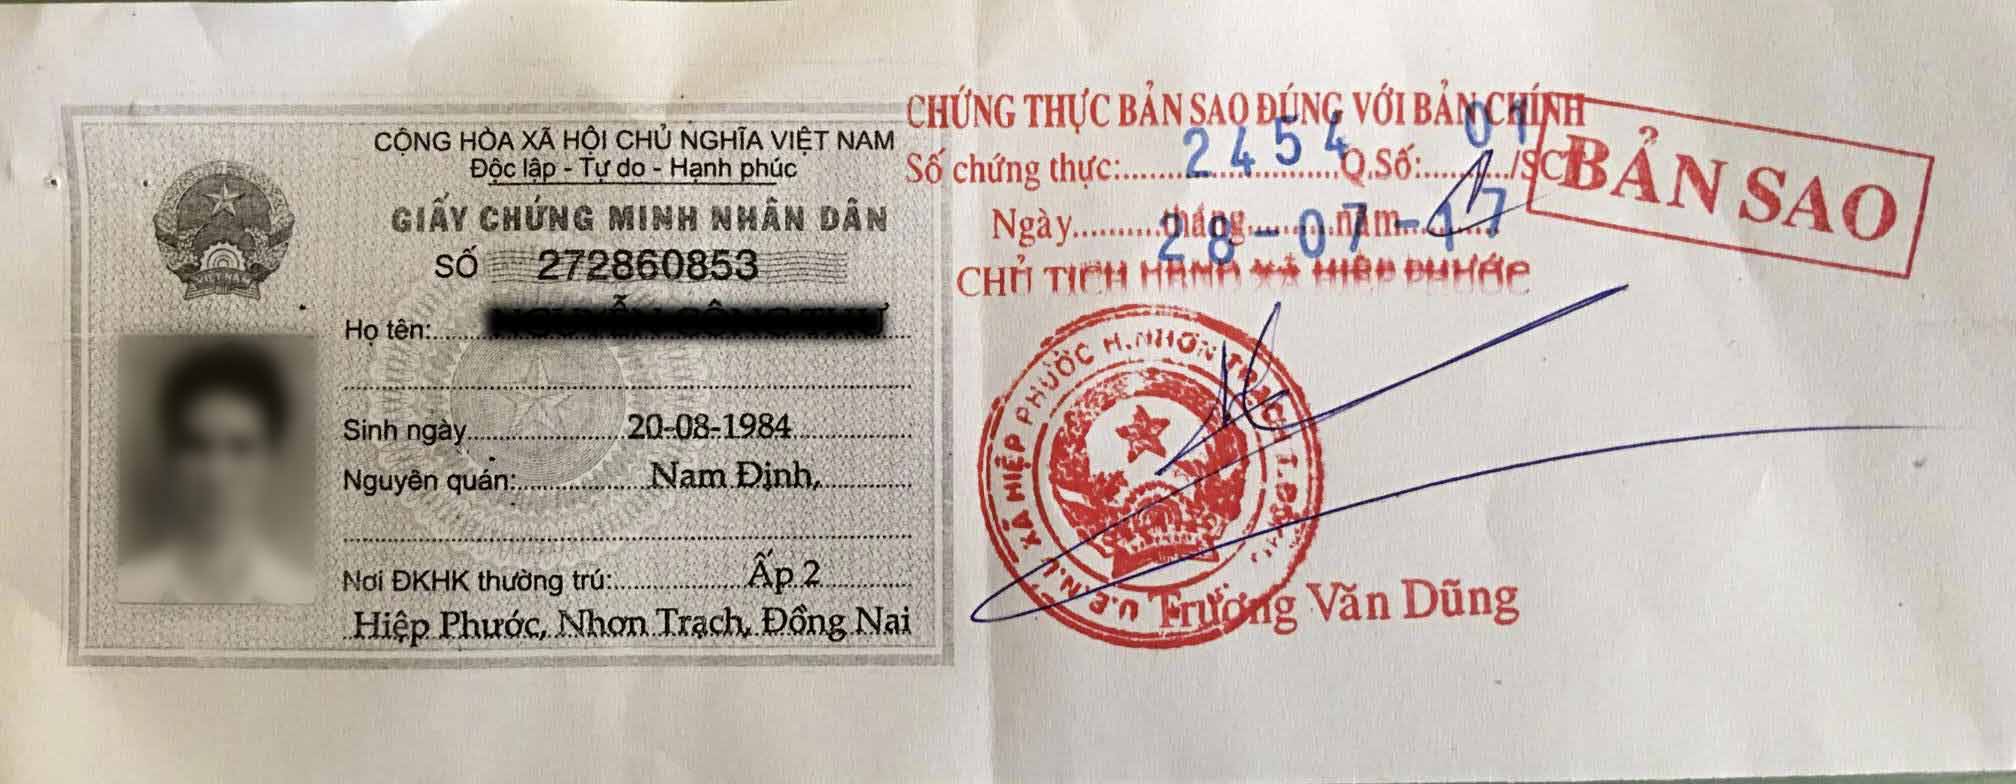 Giá trị pháp lý của bản sao chứng minh nhân dân đã được chứng thực - Luật Việt Phong | Công ty Luật uy tín